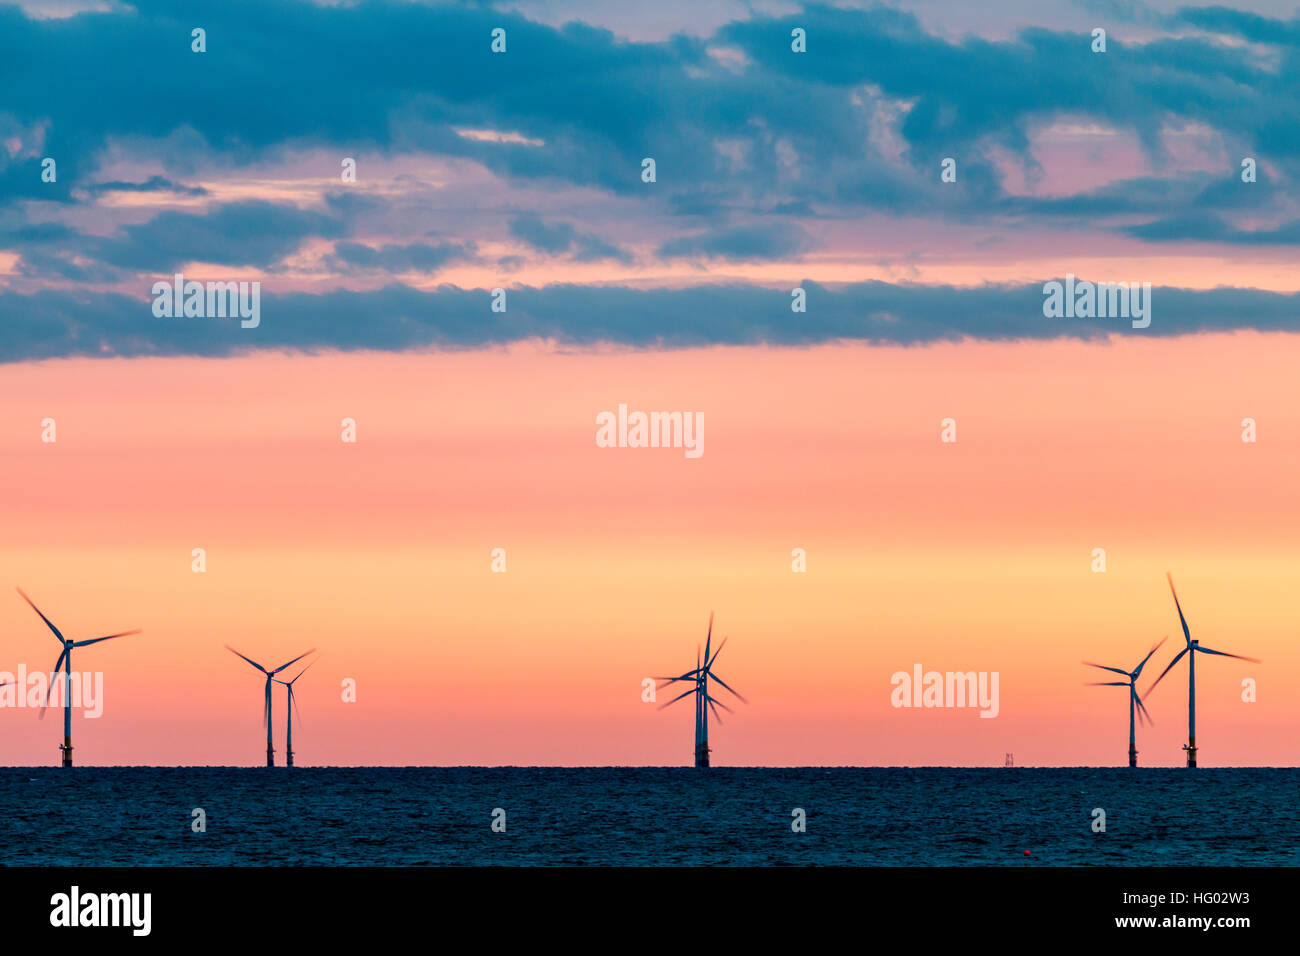 Inghilterra, Herne Bay. Le turbine eoliche, Kentish Flats per centrali eoliche nel Canale della Manica a day break, arancione chiaro cielo sull'orizzonte con le nuvole scure sopra. Foto Stock